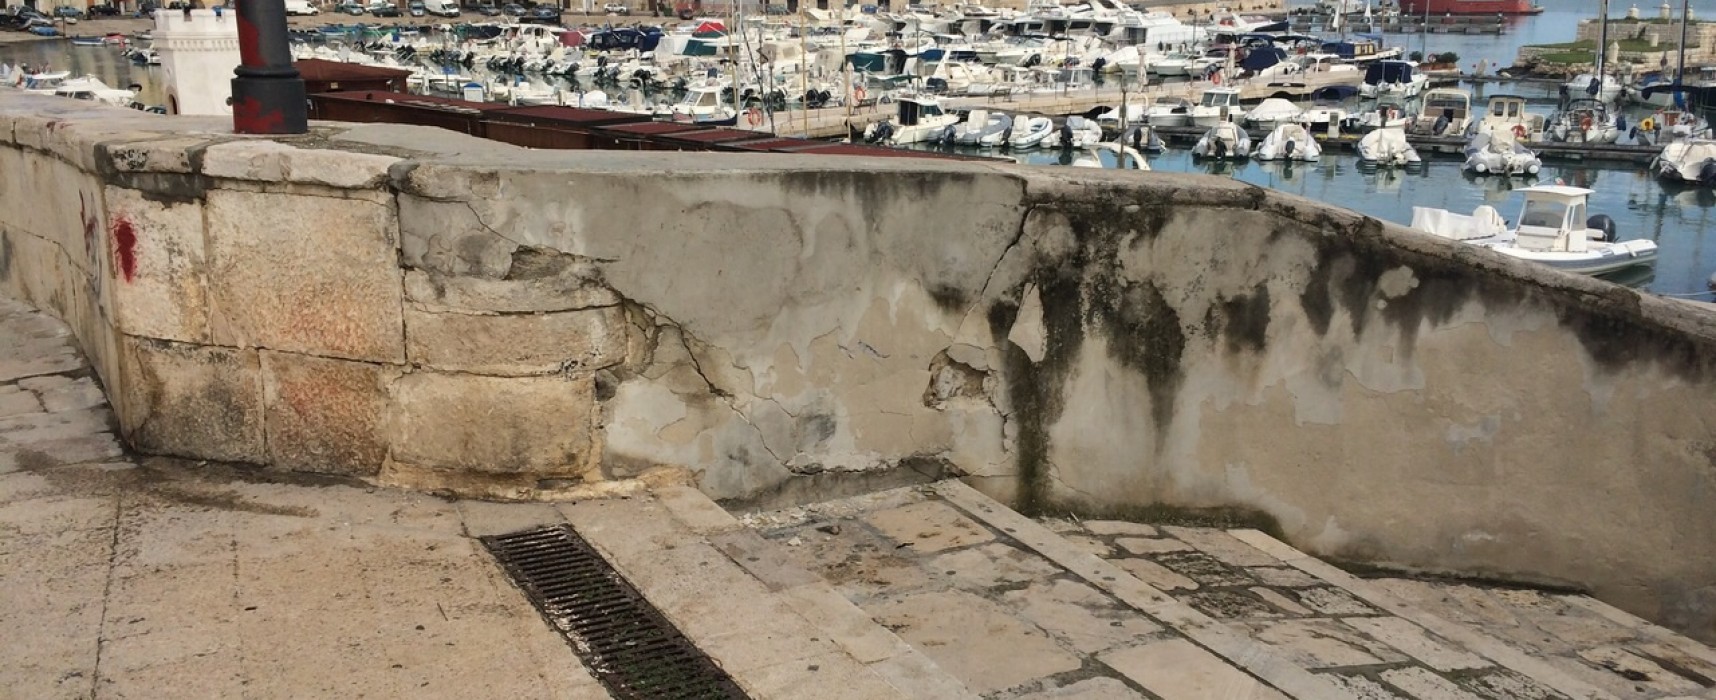 Crepa sulle mura vicino al bastione San Martino, il comune: “Danni causati dall’impatto di un’autovettura”